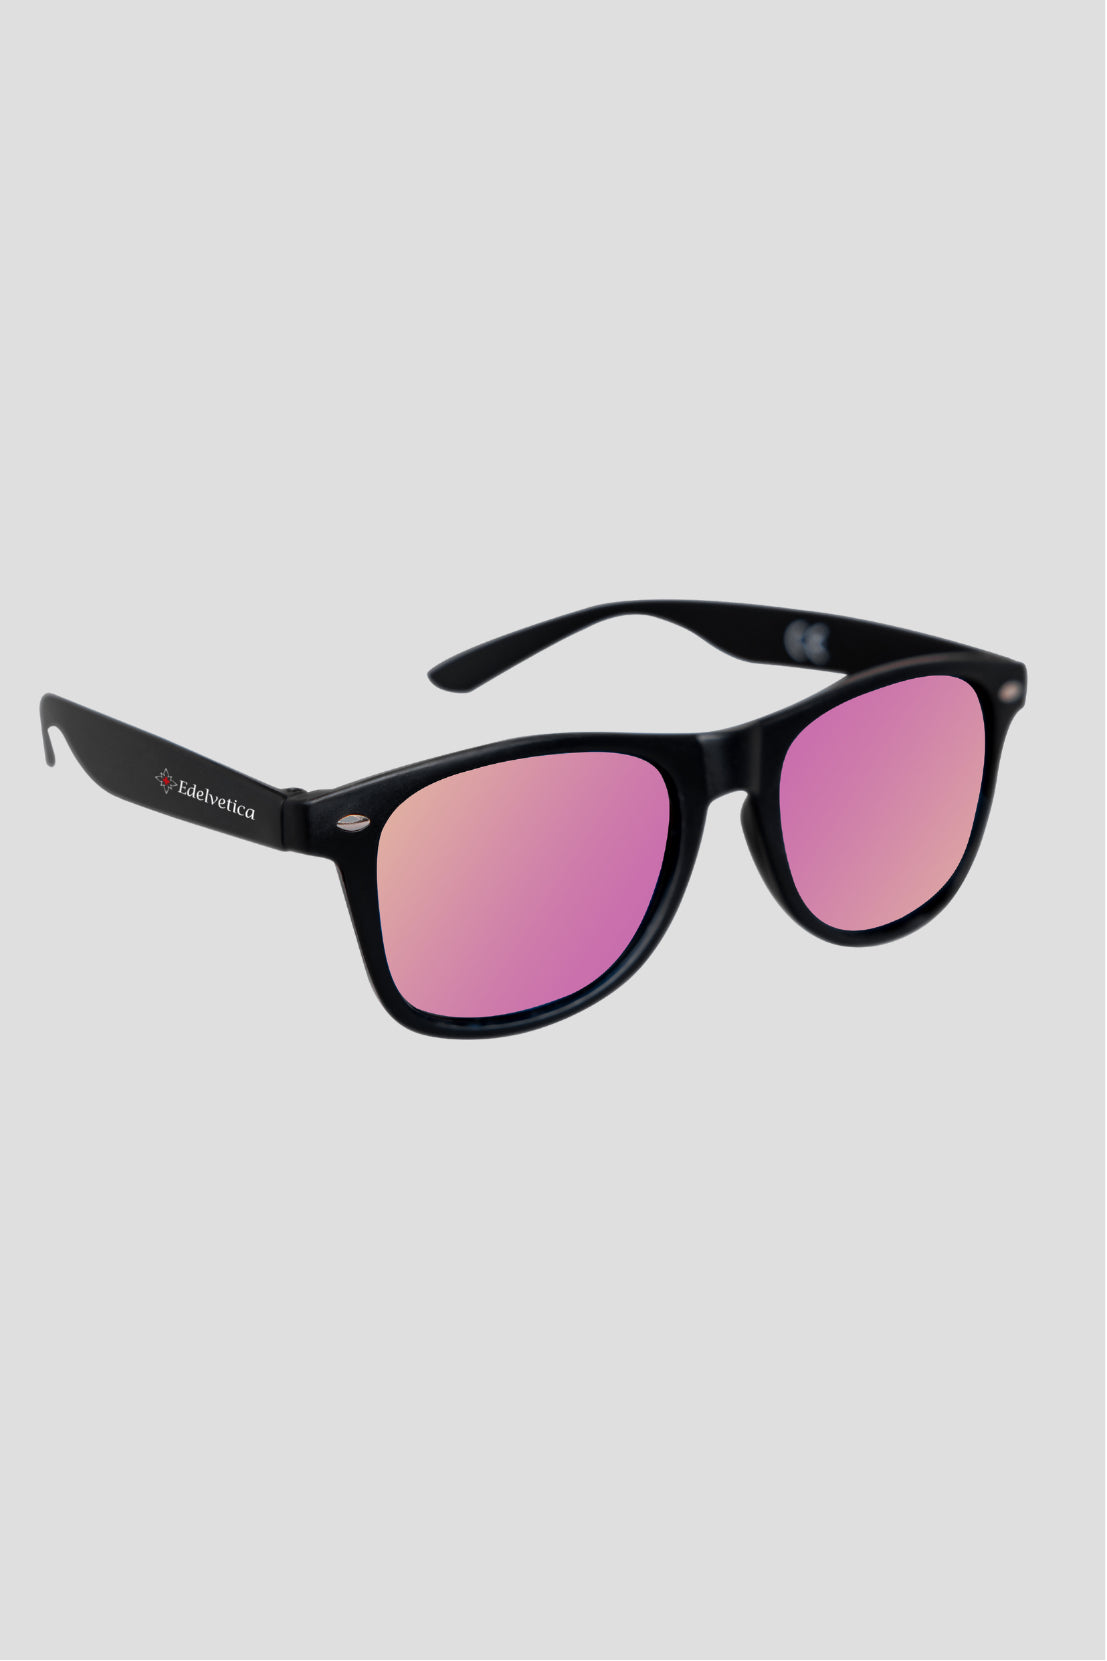 Unisex-Sonnenbrille mit Edelvetica-Logo, eine stilvolle und vielseitige Sonnenbrille. Sie verfügt über ein modernes Design mit dem charakteristischen Edelvetica-Logo, was einen Hauch von Eleganz und Markenbewusstsein vermittelt. Ideal für Männer und Frauen, die sowohl Funktionalität als auch Mode in ihrem Alltagsaccessoire suchen.